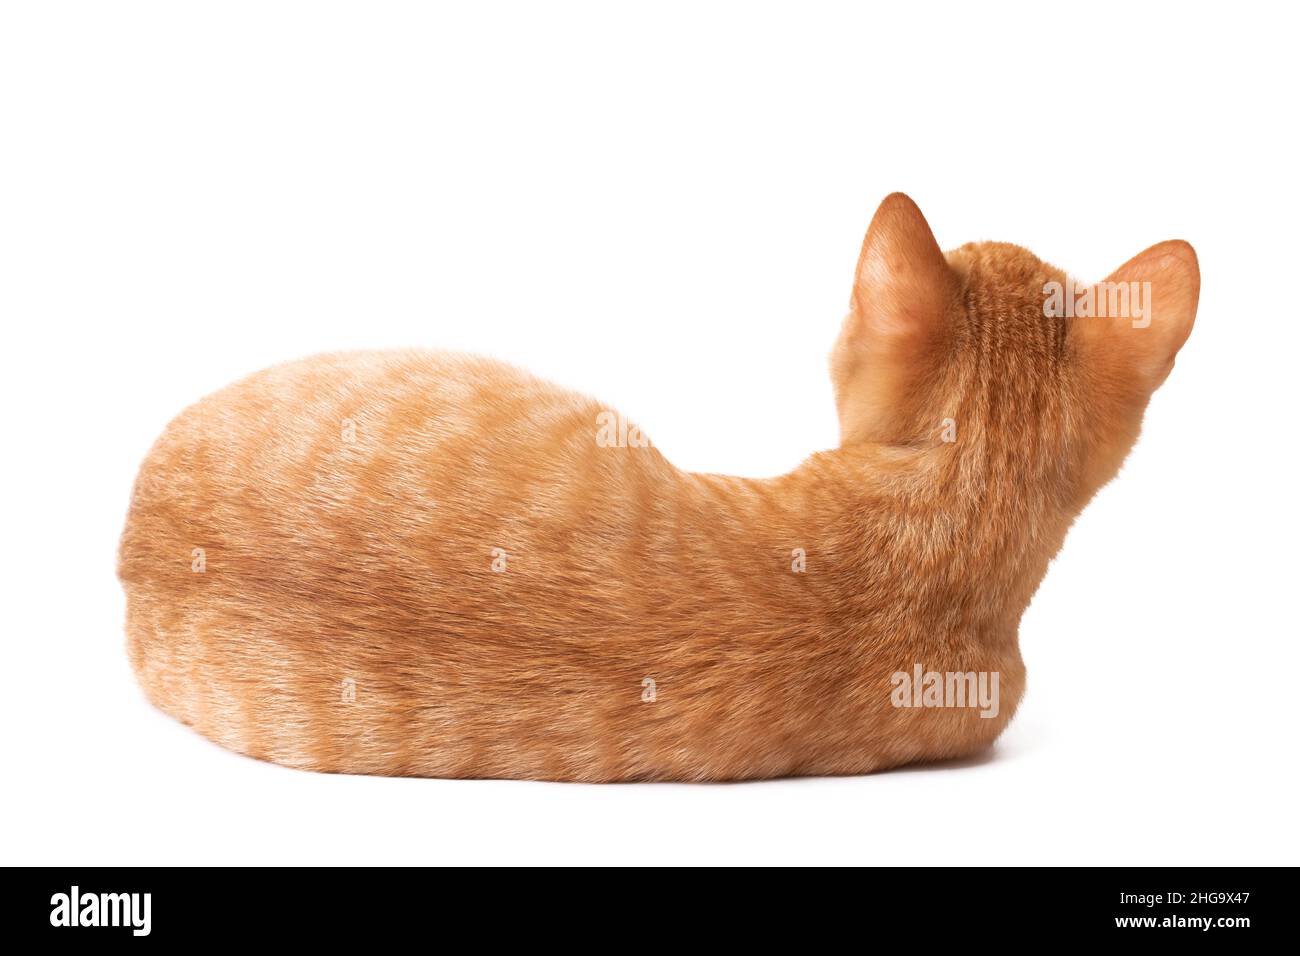 Le chat repose avec son dos à la caméra isolée sur un fond blanc Banque D'Images